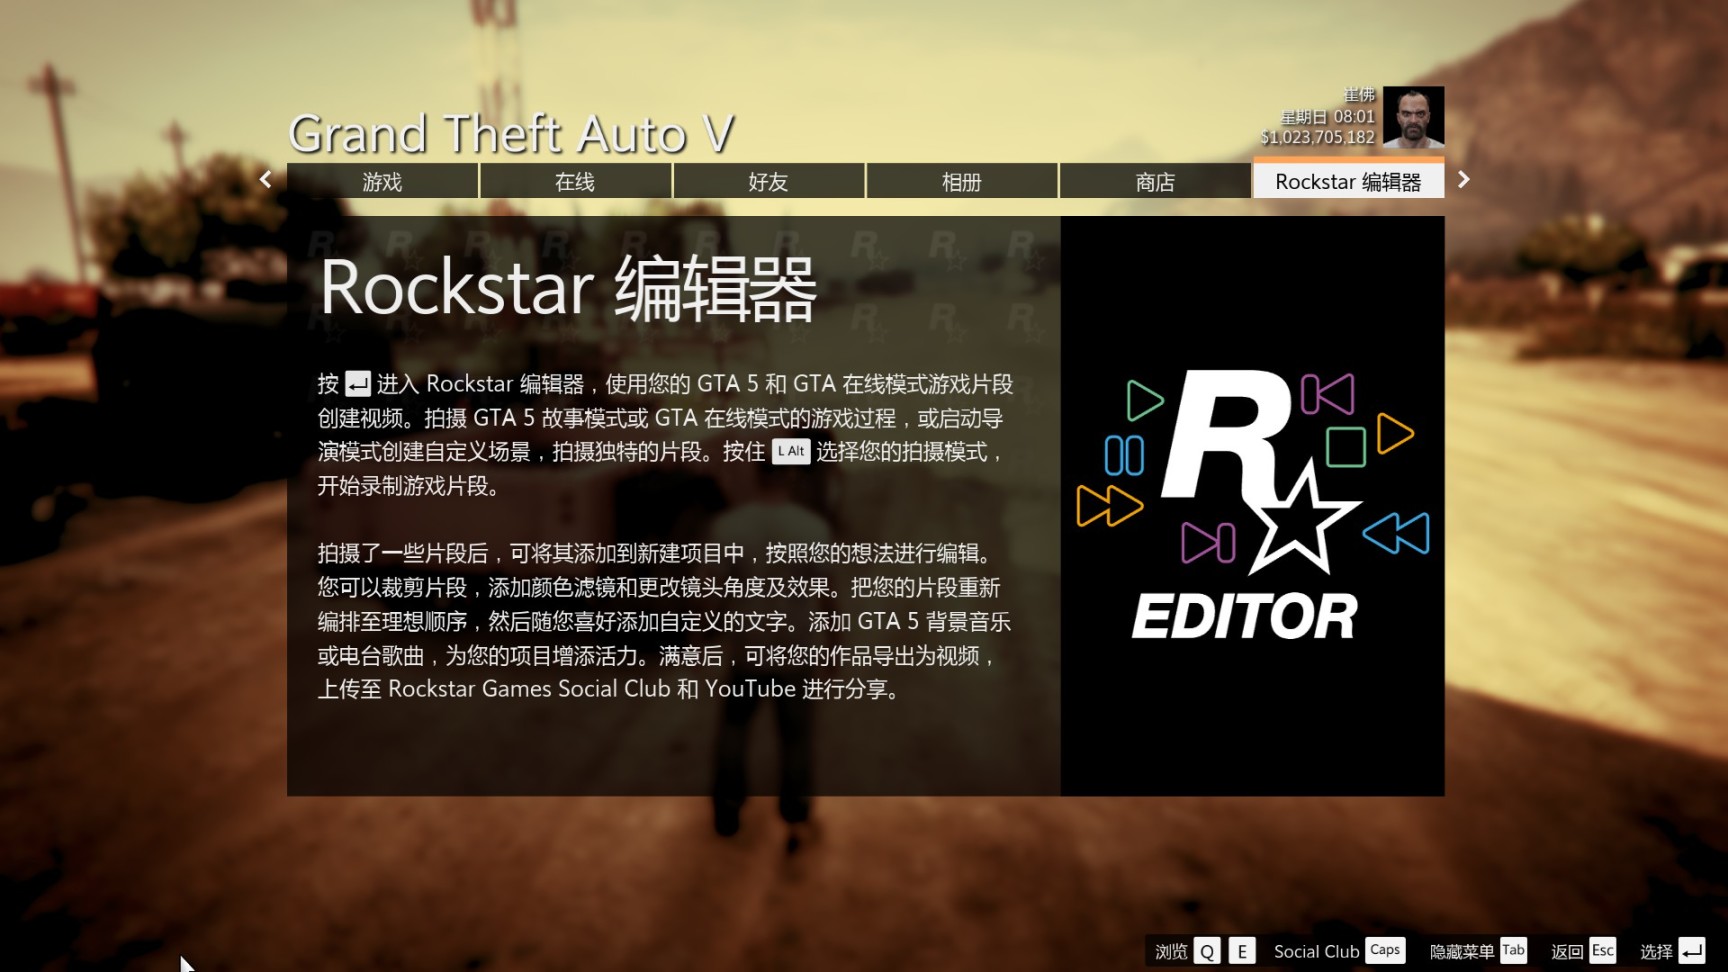 【侠盗猎车手5】GTA5:利用R星编辑器来拍摄自己的高光时刻的照片